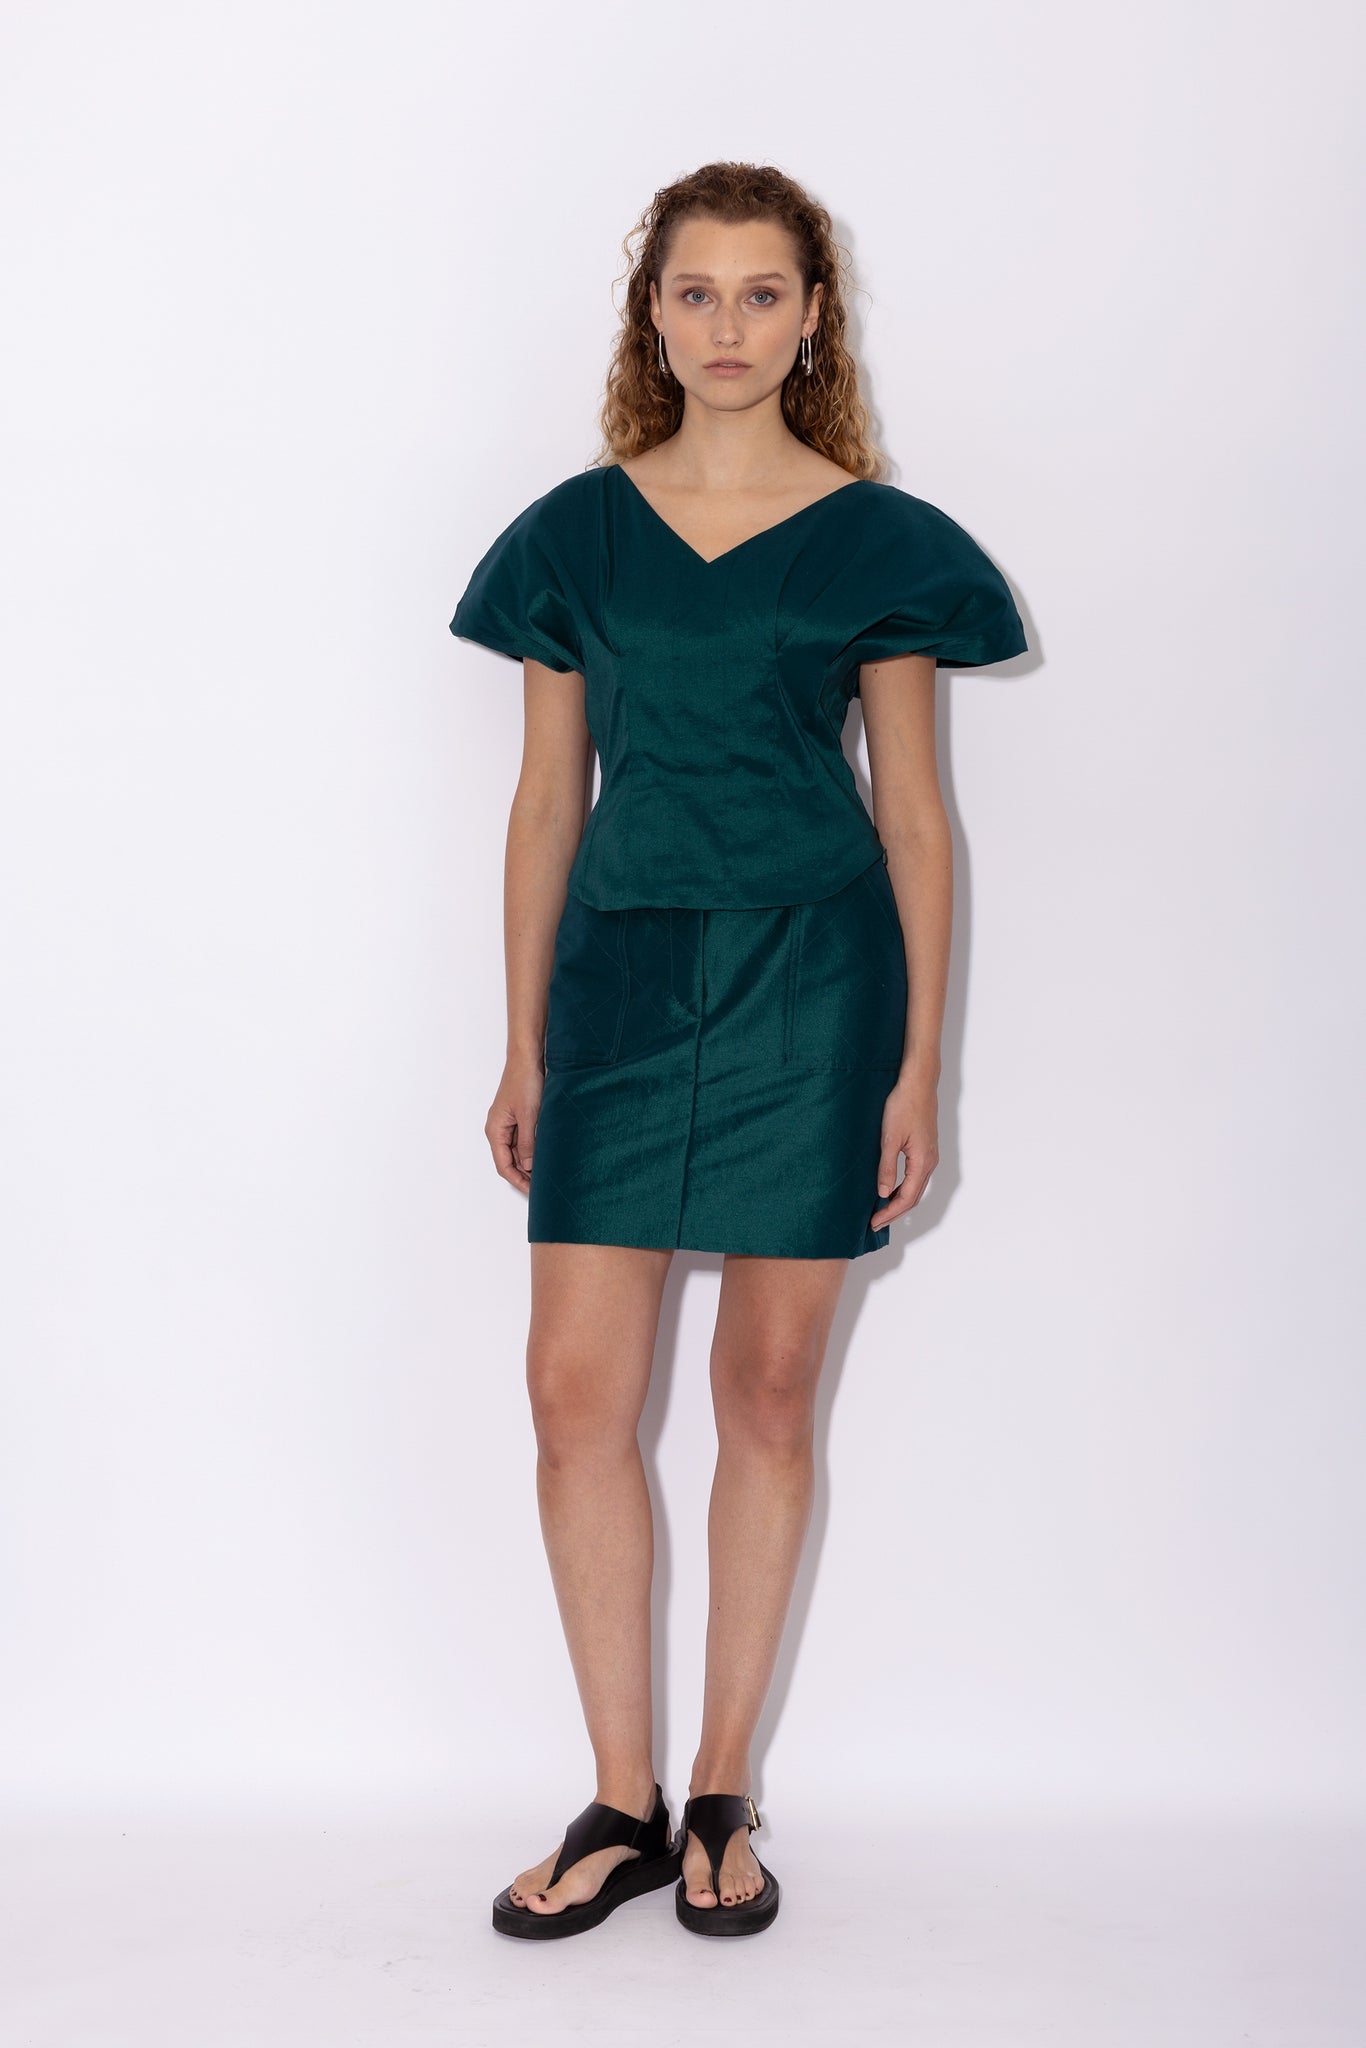 SKYLER skirt | PINE GREEN